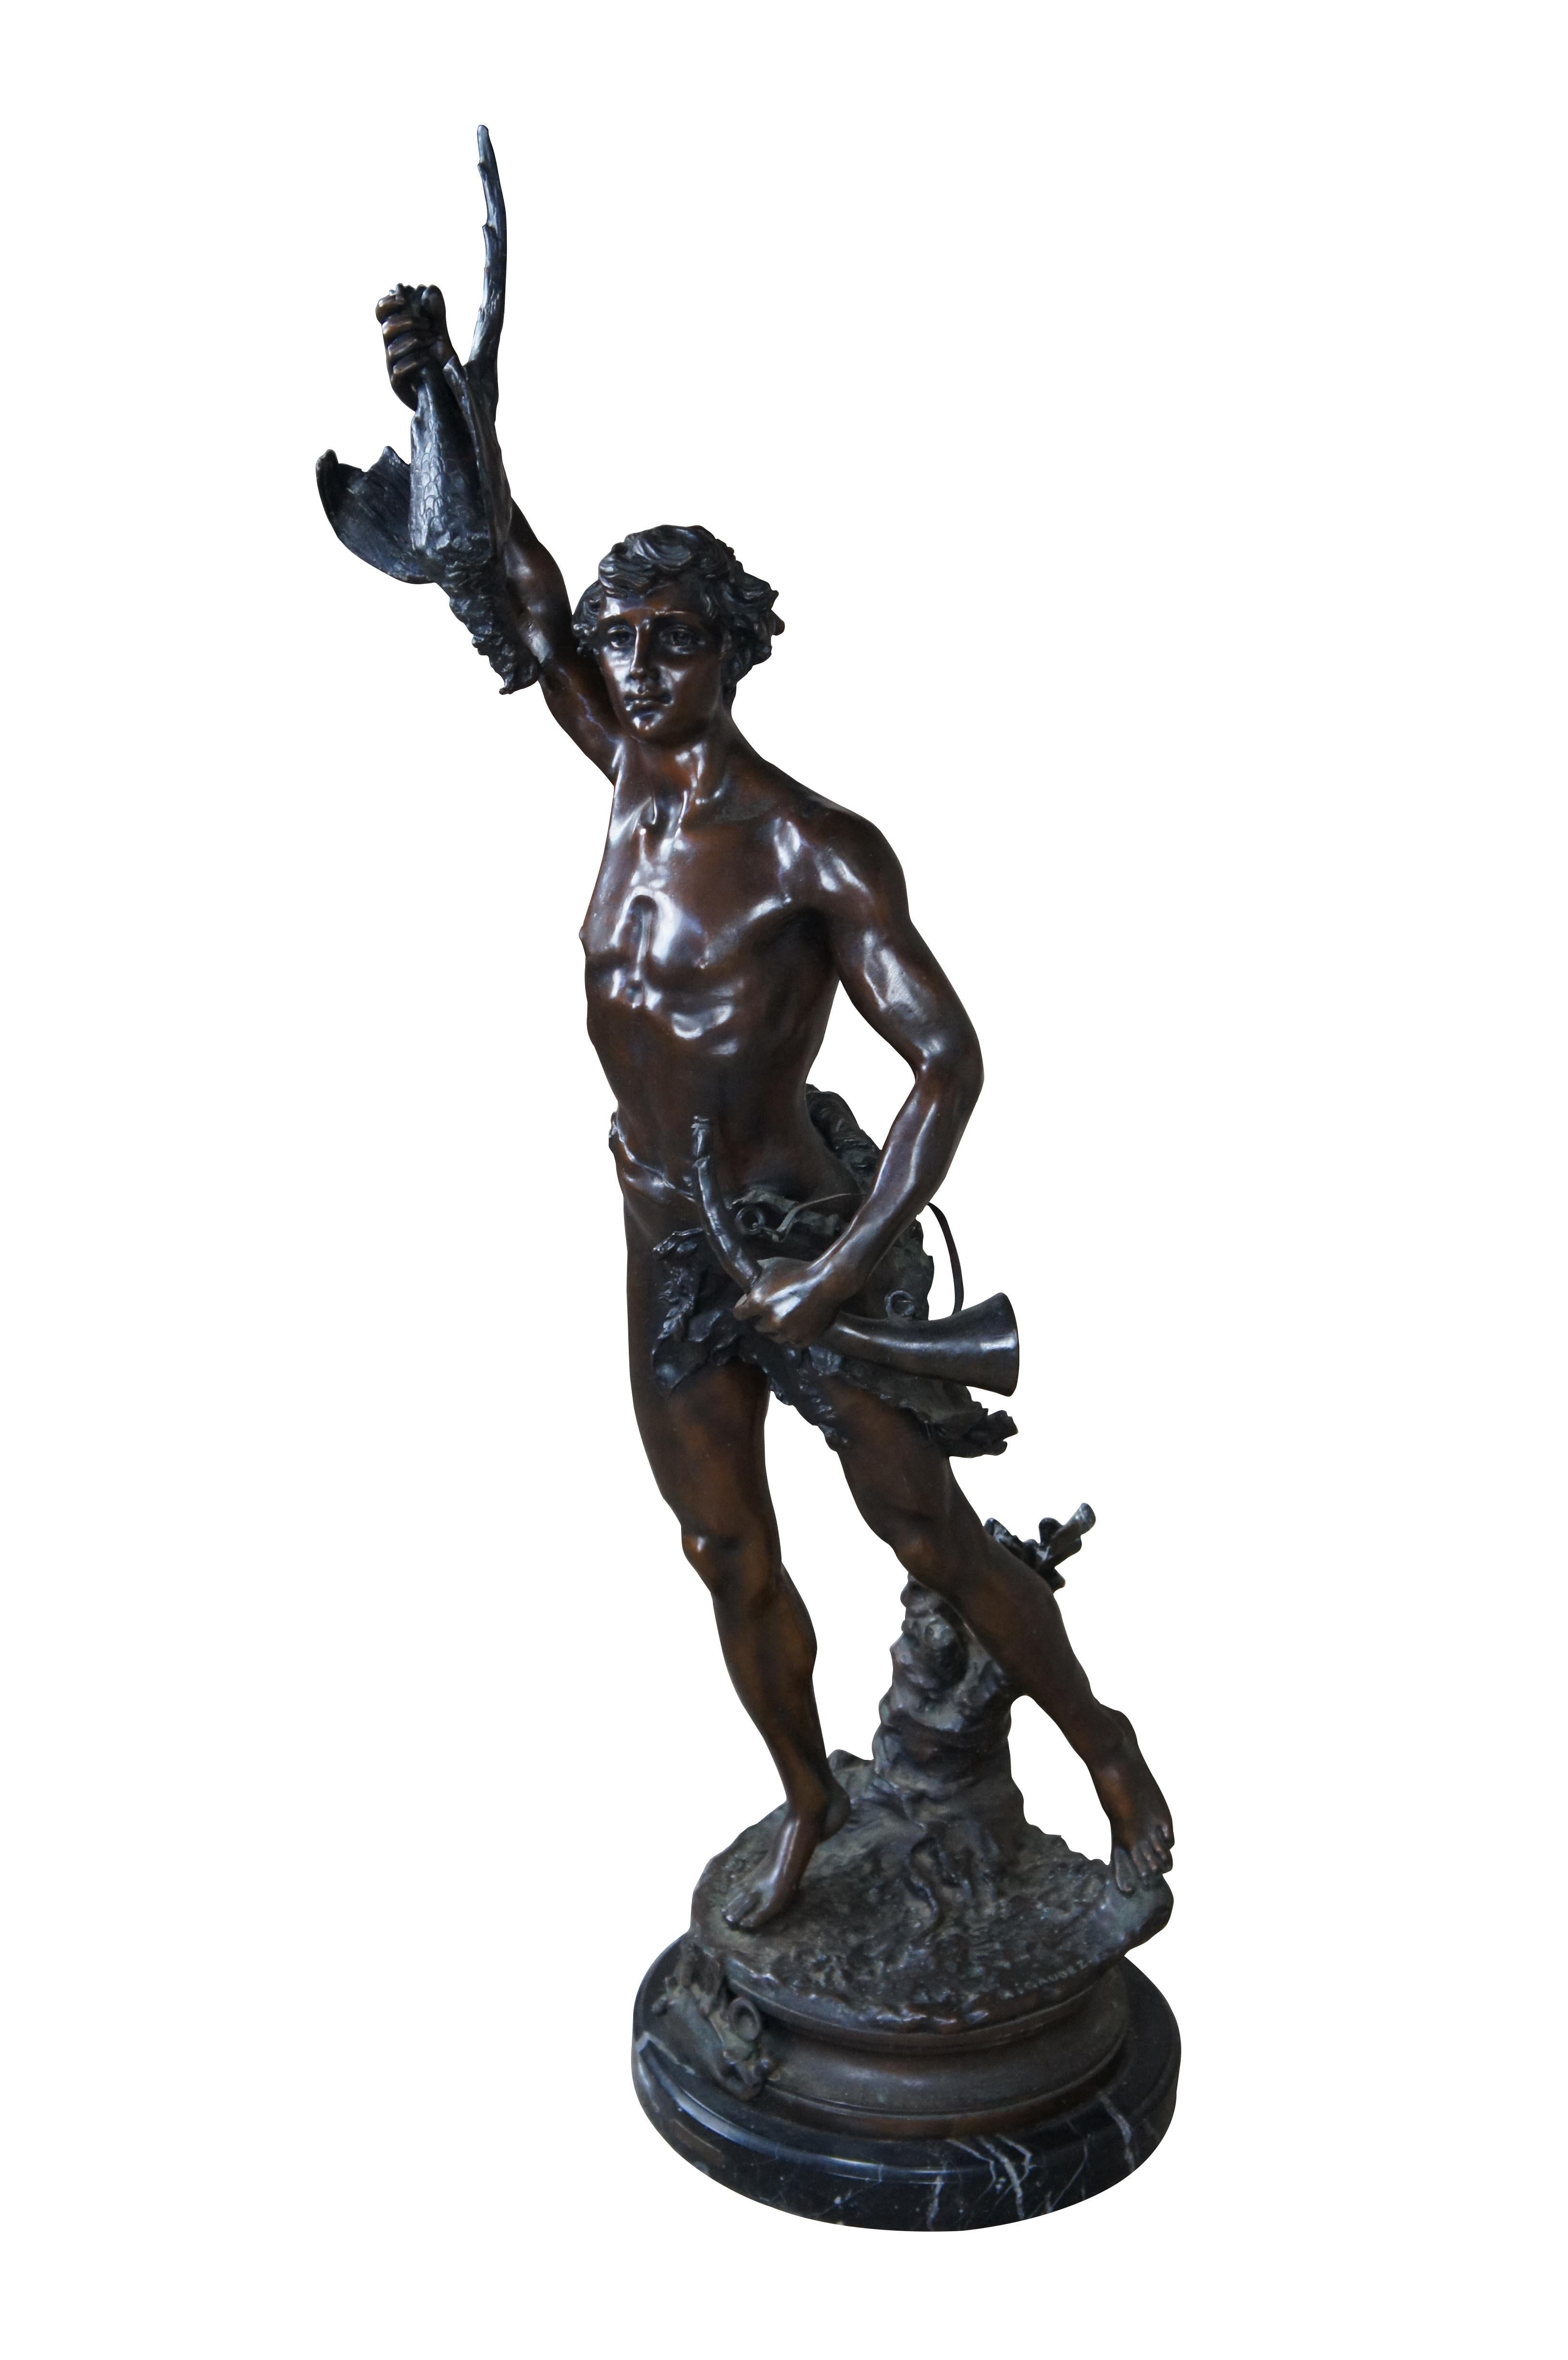 Remarquable sculpture en bronze d'Actéon par Adrein Etienne Gaudez. La statue est sculptée dans les moindres détails, représentant Horn avec un oiseau dans son bras tendu, debout sur une jambe et un cor d'harmonie dans son autre bras. Comprend une